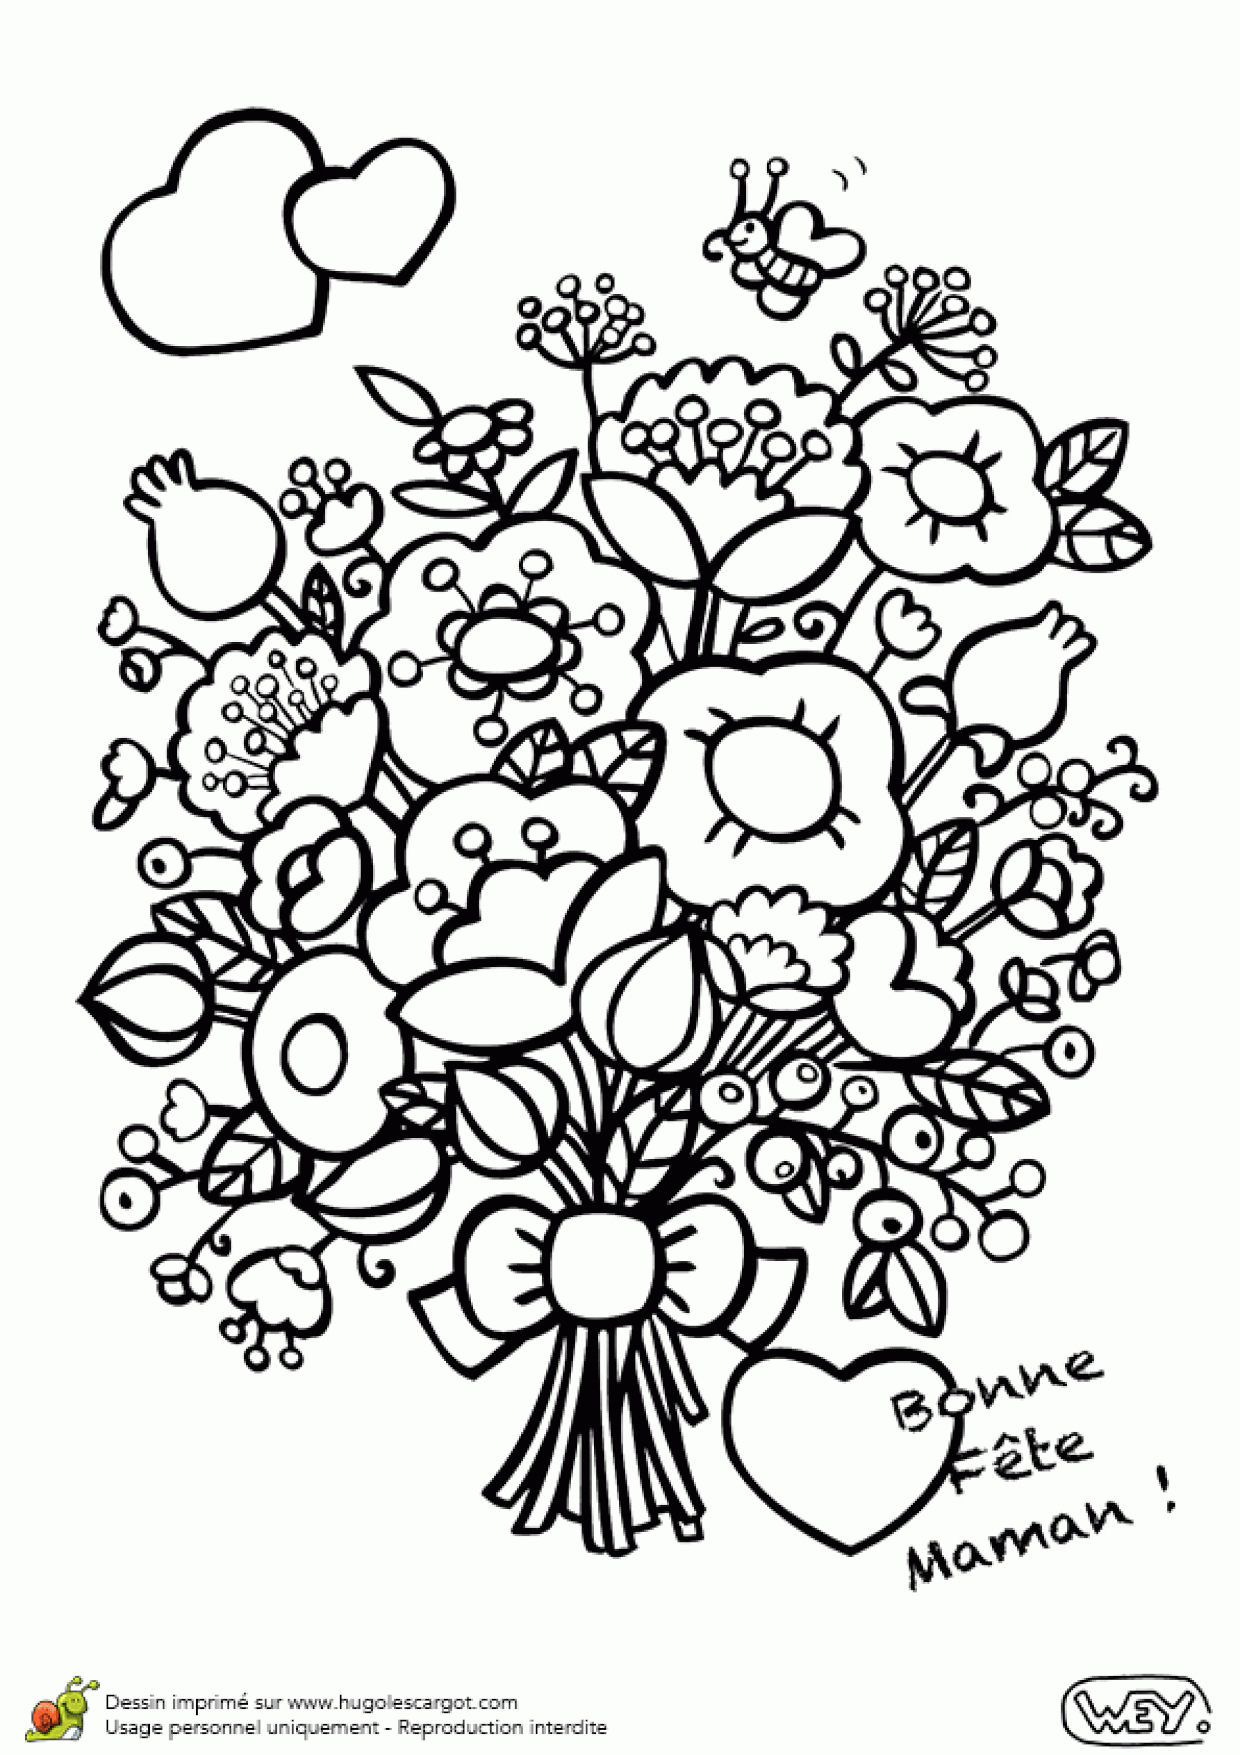 Coloriage D&amp;#039;un Gros Bouquet De Fleurs Pour La Fête Des Mères encequiconcerne Dessin A Colorier De Fleur 